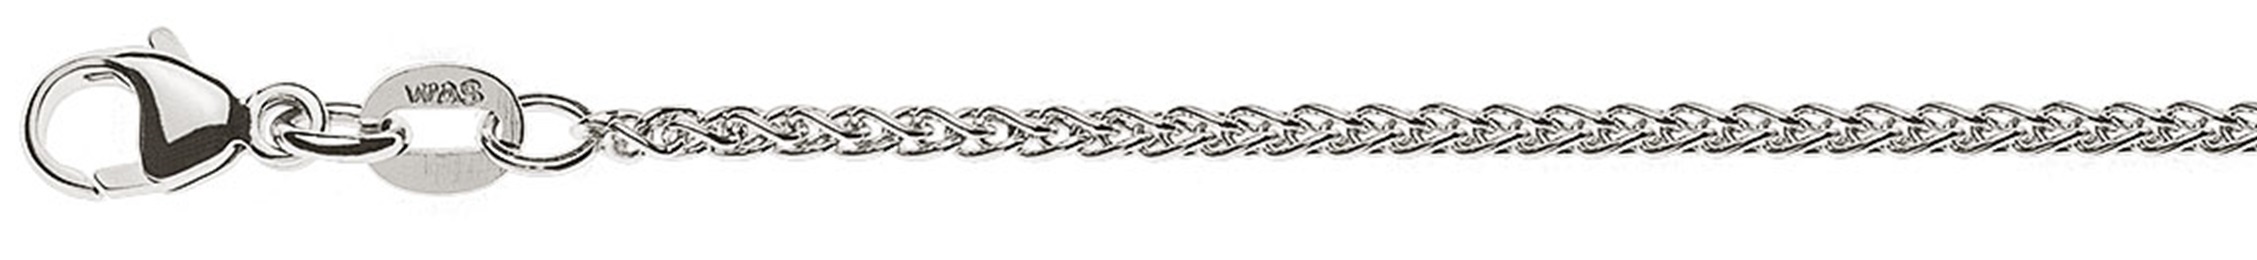 AURONOS Prestige Necklace white gold 18K cable chain 60cm 1.65mm